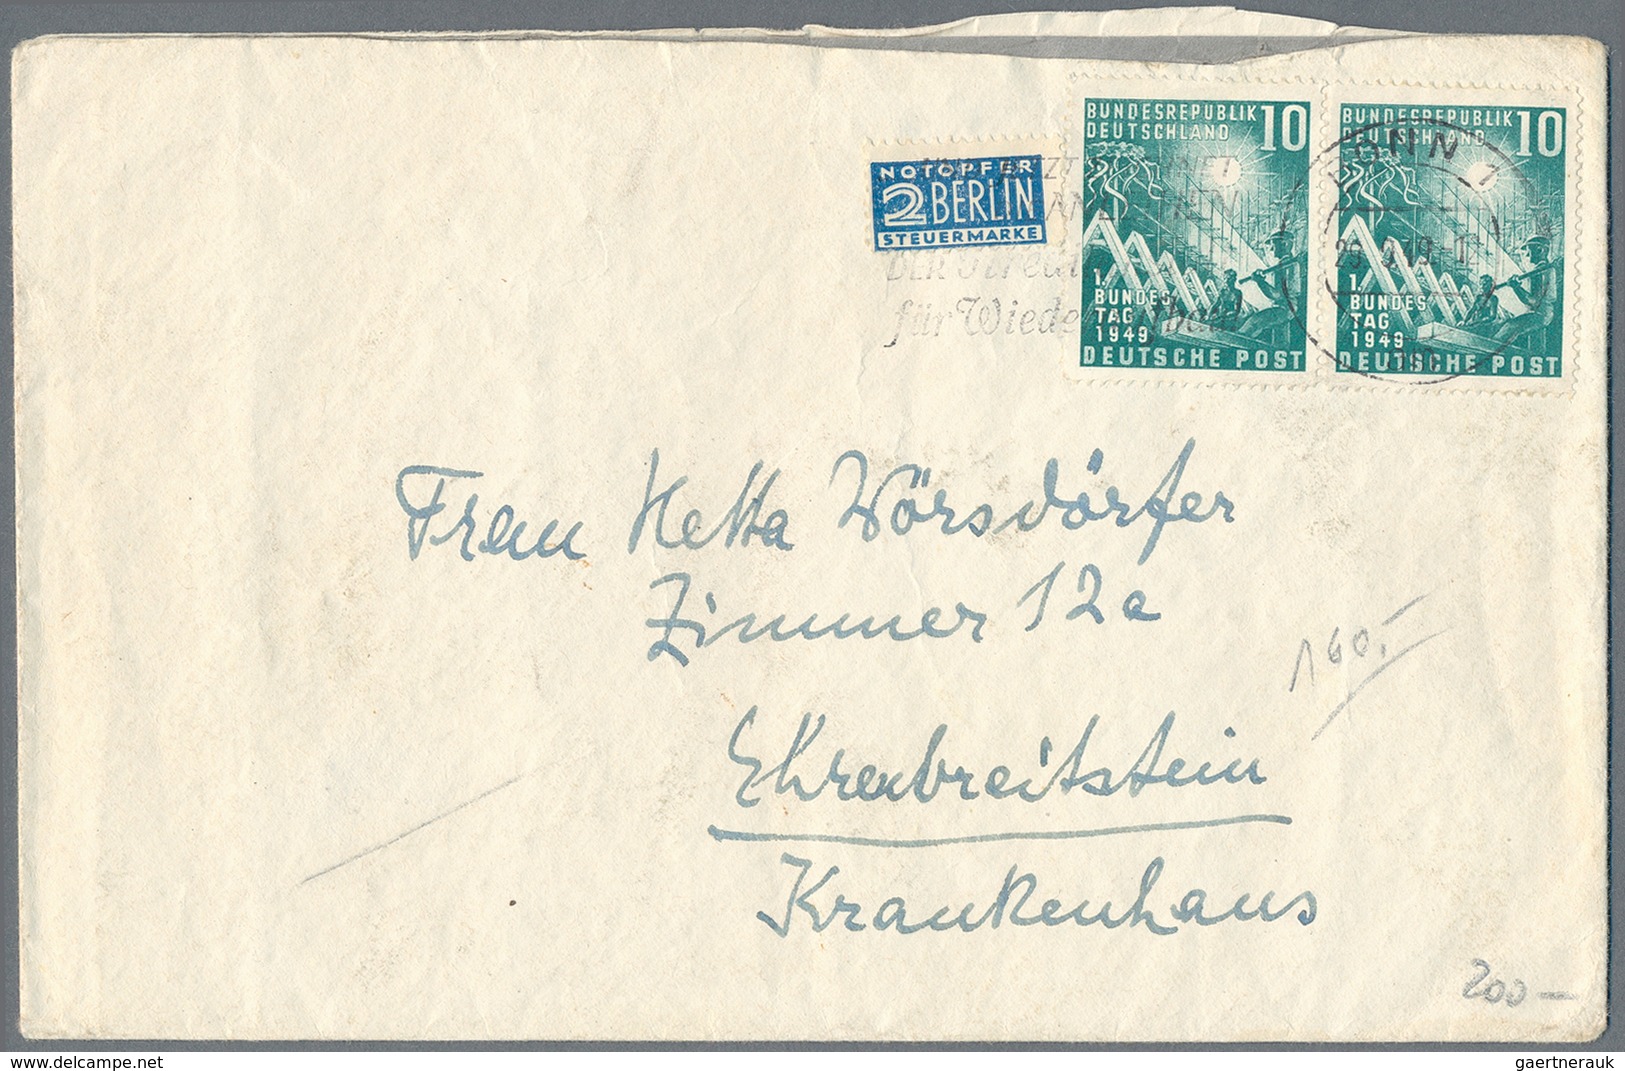 Deutschland nach 1945: 1946/1957 (ca.), abwechslungsreicher Posten mit rund 200 Belegen, dabei u.a.